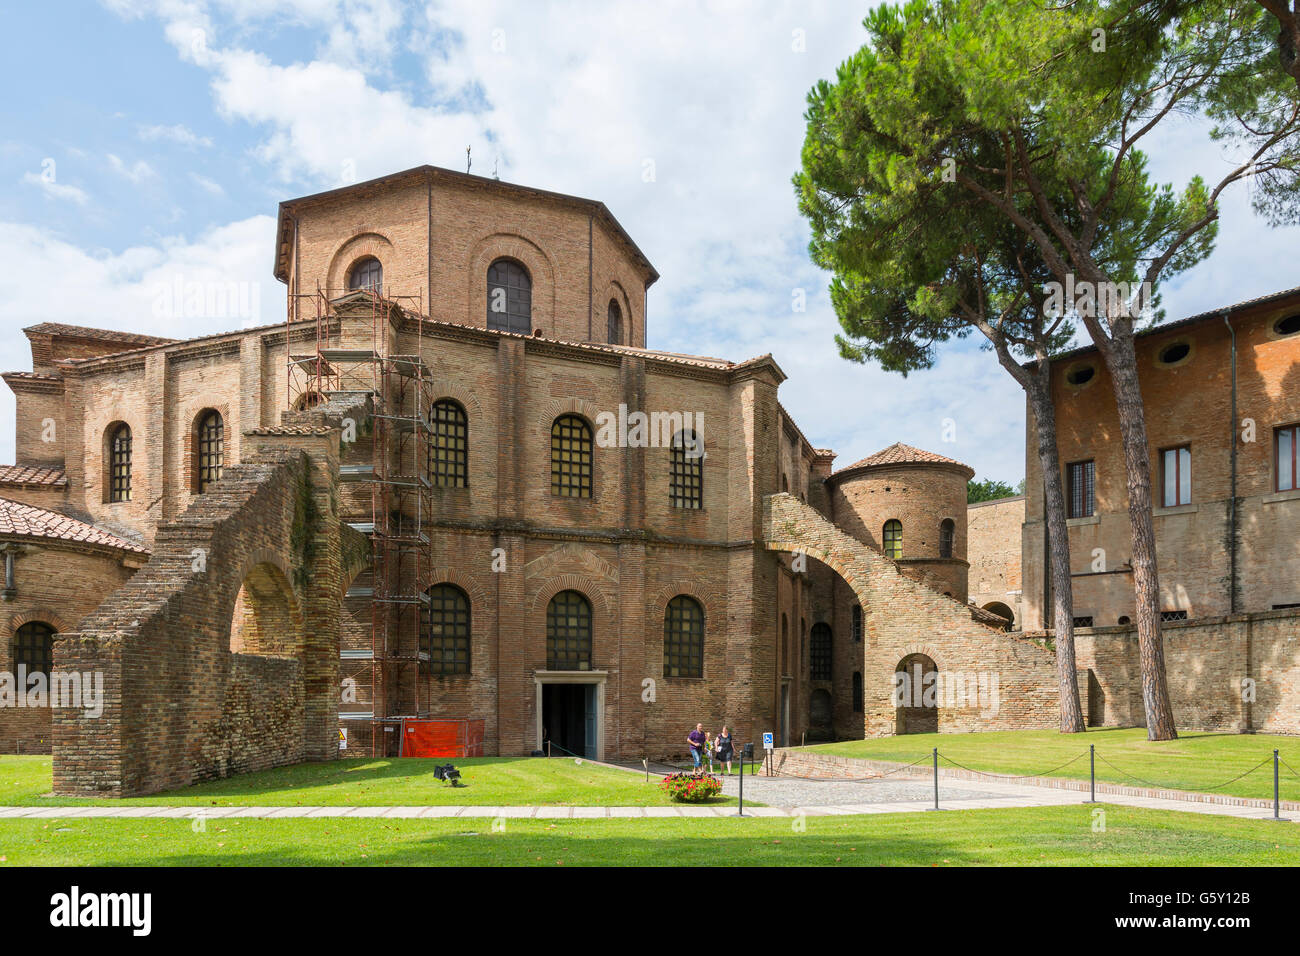 Ravenna,Italia-agosto 21,2015:vista del San Vitale Basilica in Ravenna-Italy,durante un rinnovamento architettonico in una giornata nuvolosa. Foto Stock